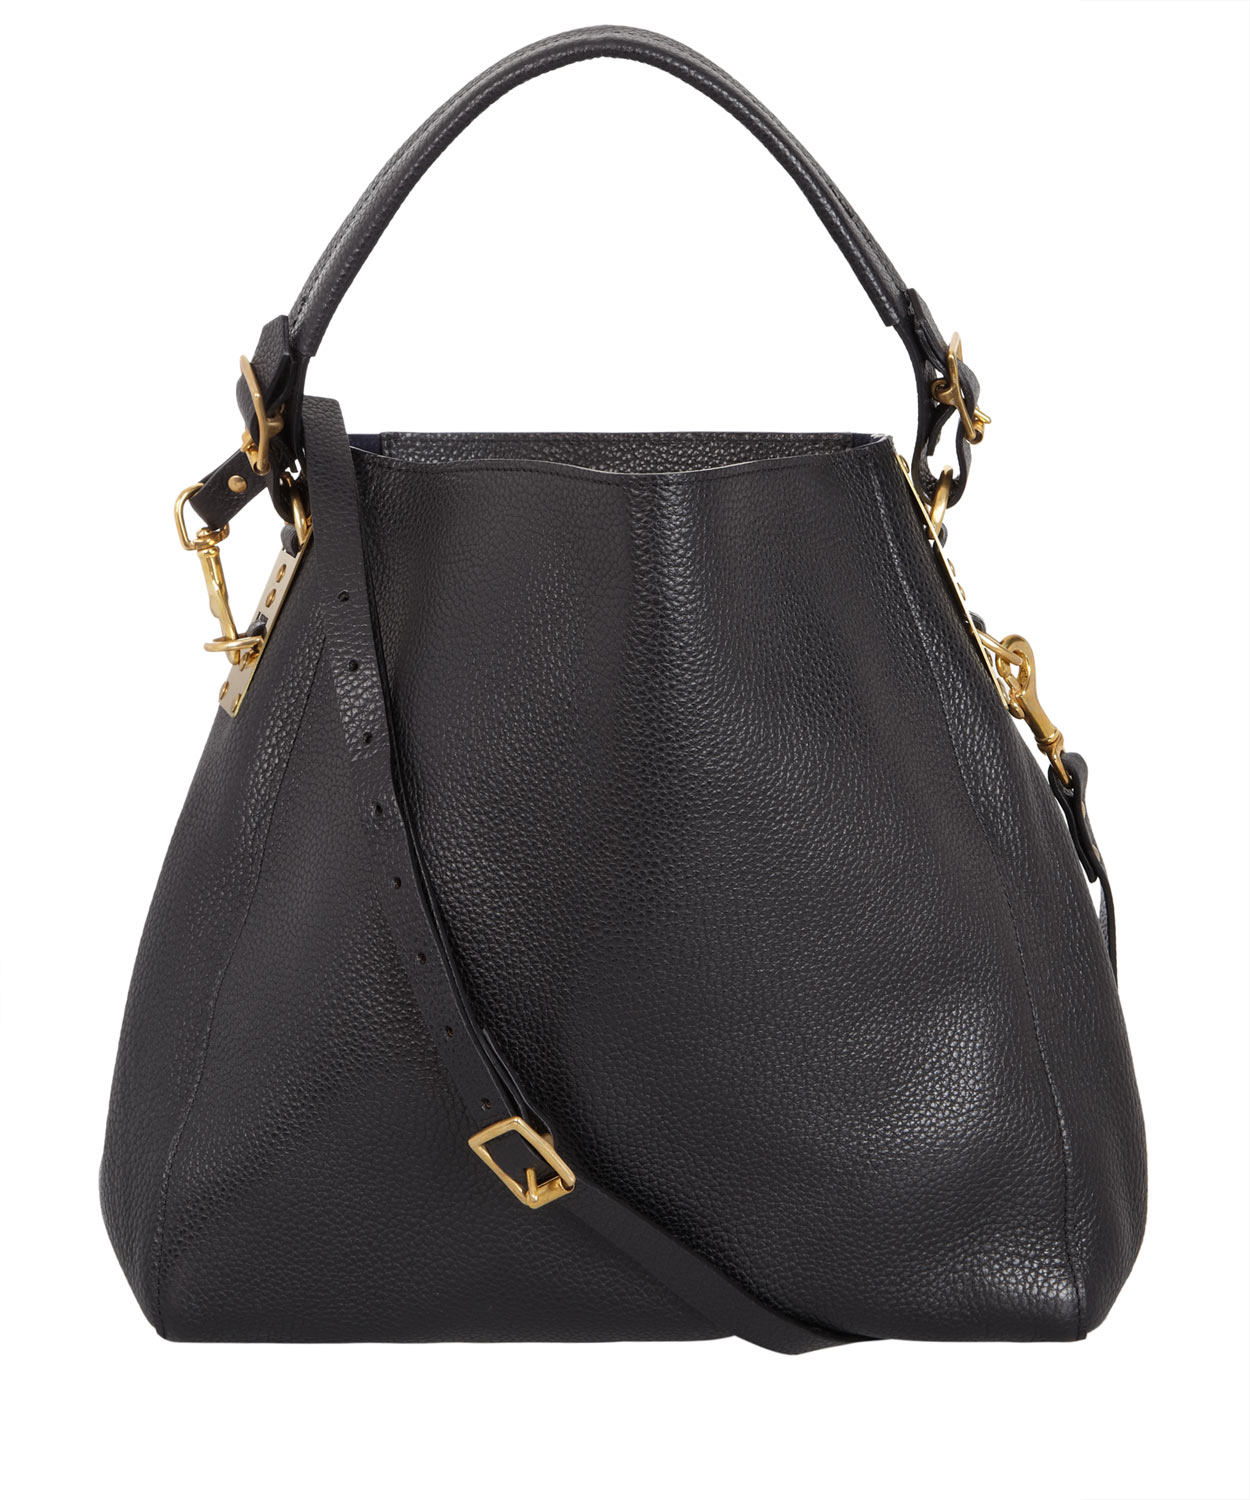 Lyst - Sophie Hulme Black Leather Stamped Bucket Bag in Black